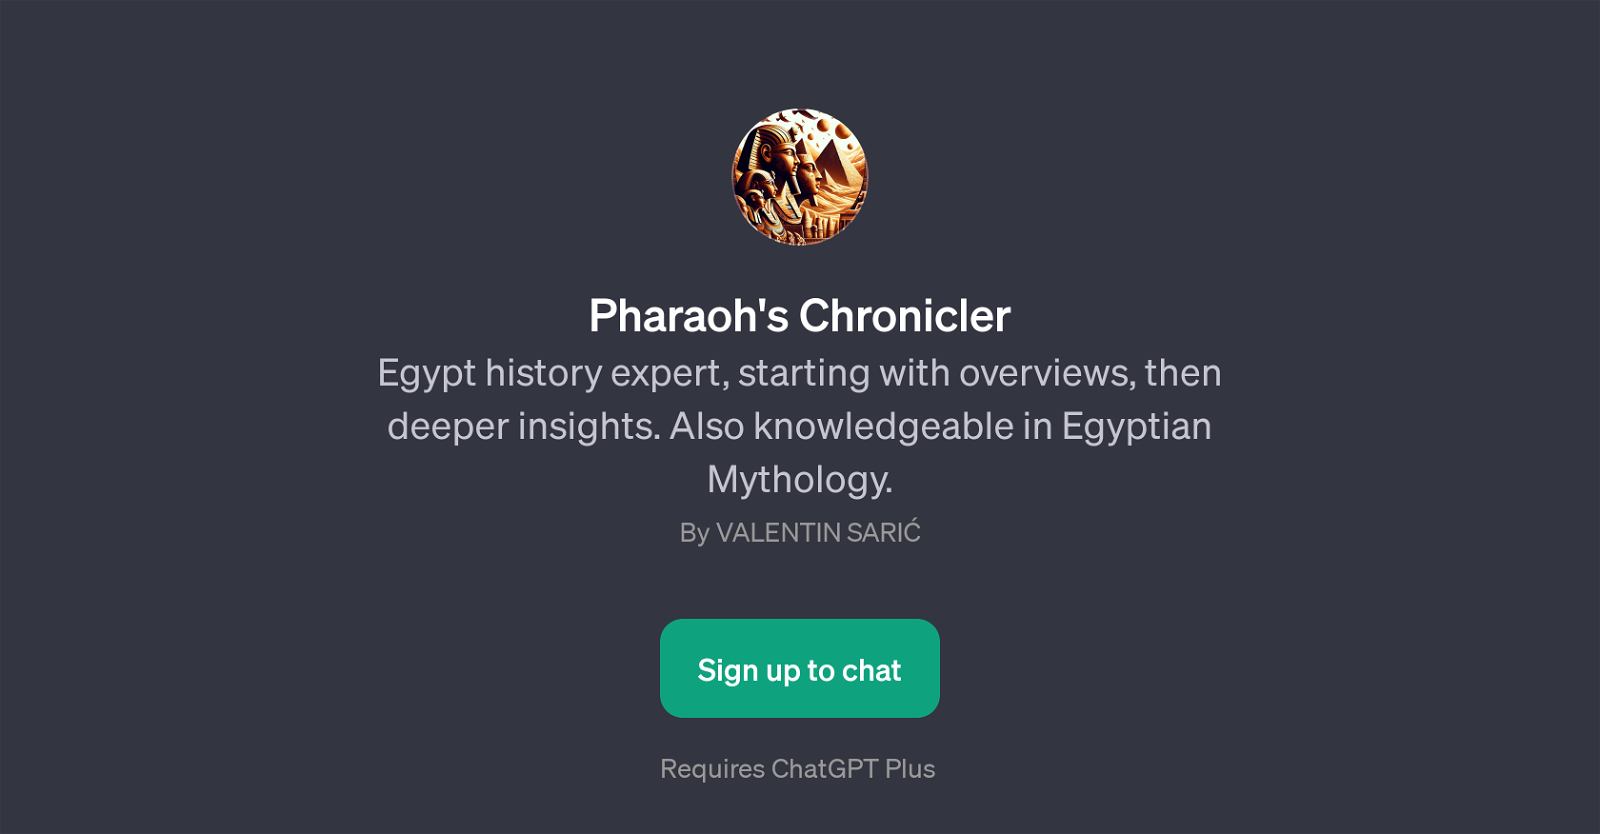 Pharaoh's Chronicler website